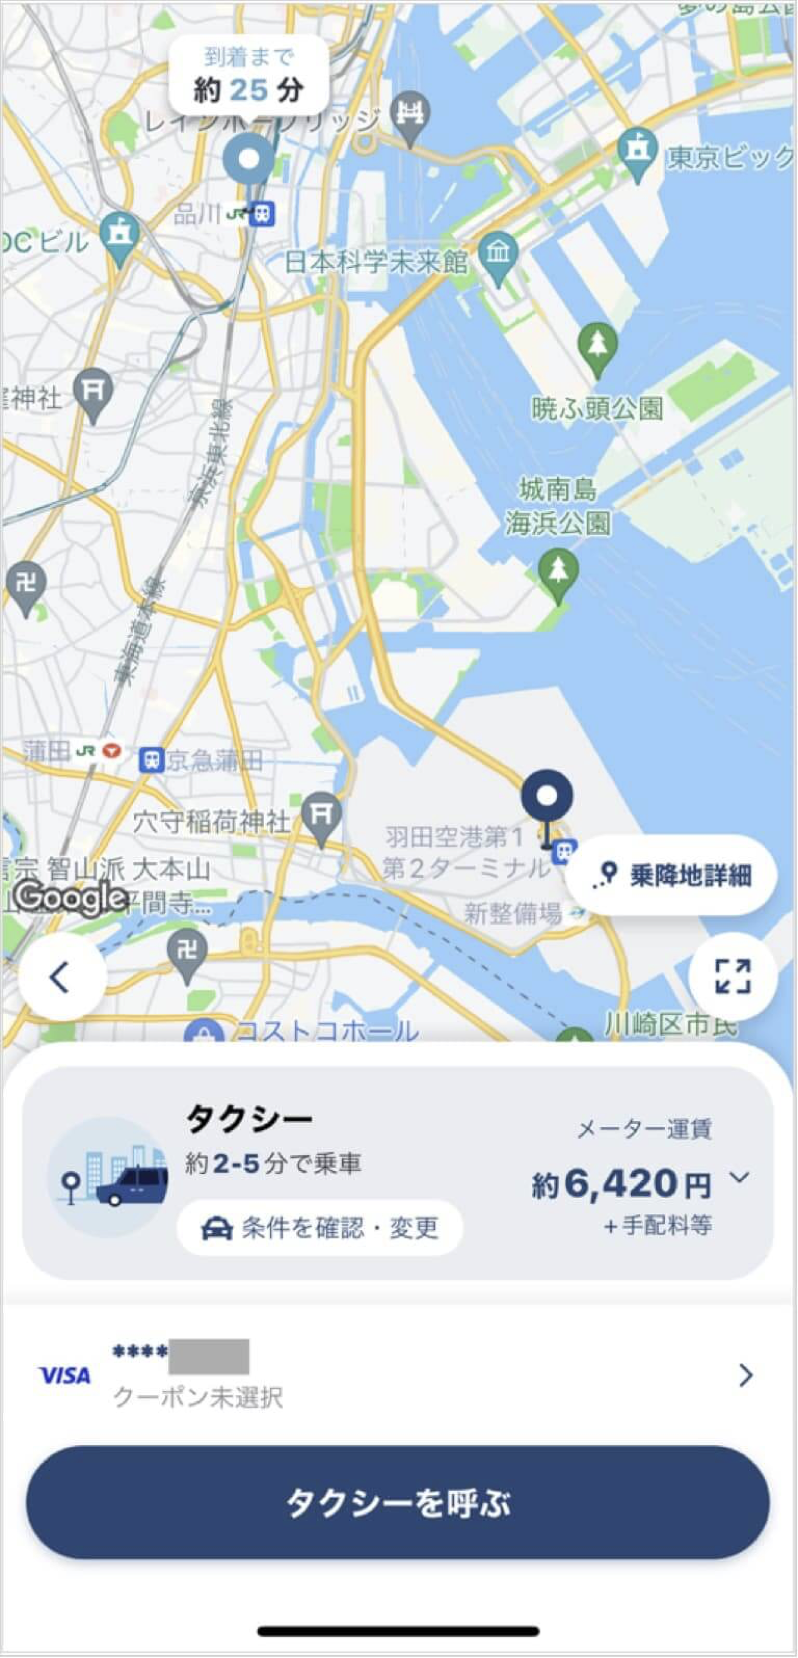 羽田空港から品川駅までのタクシー料金・所要時間まとめ